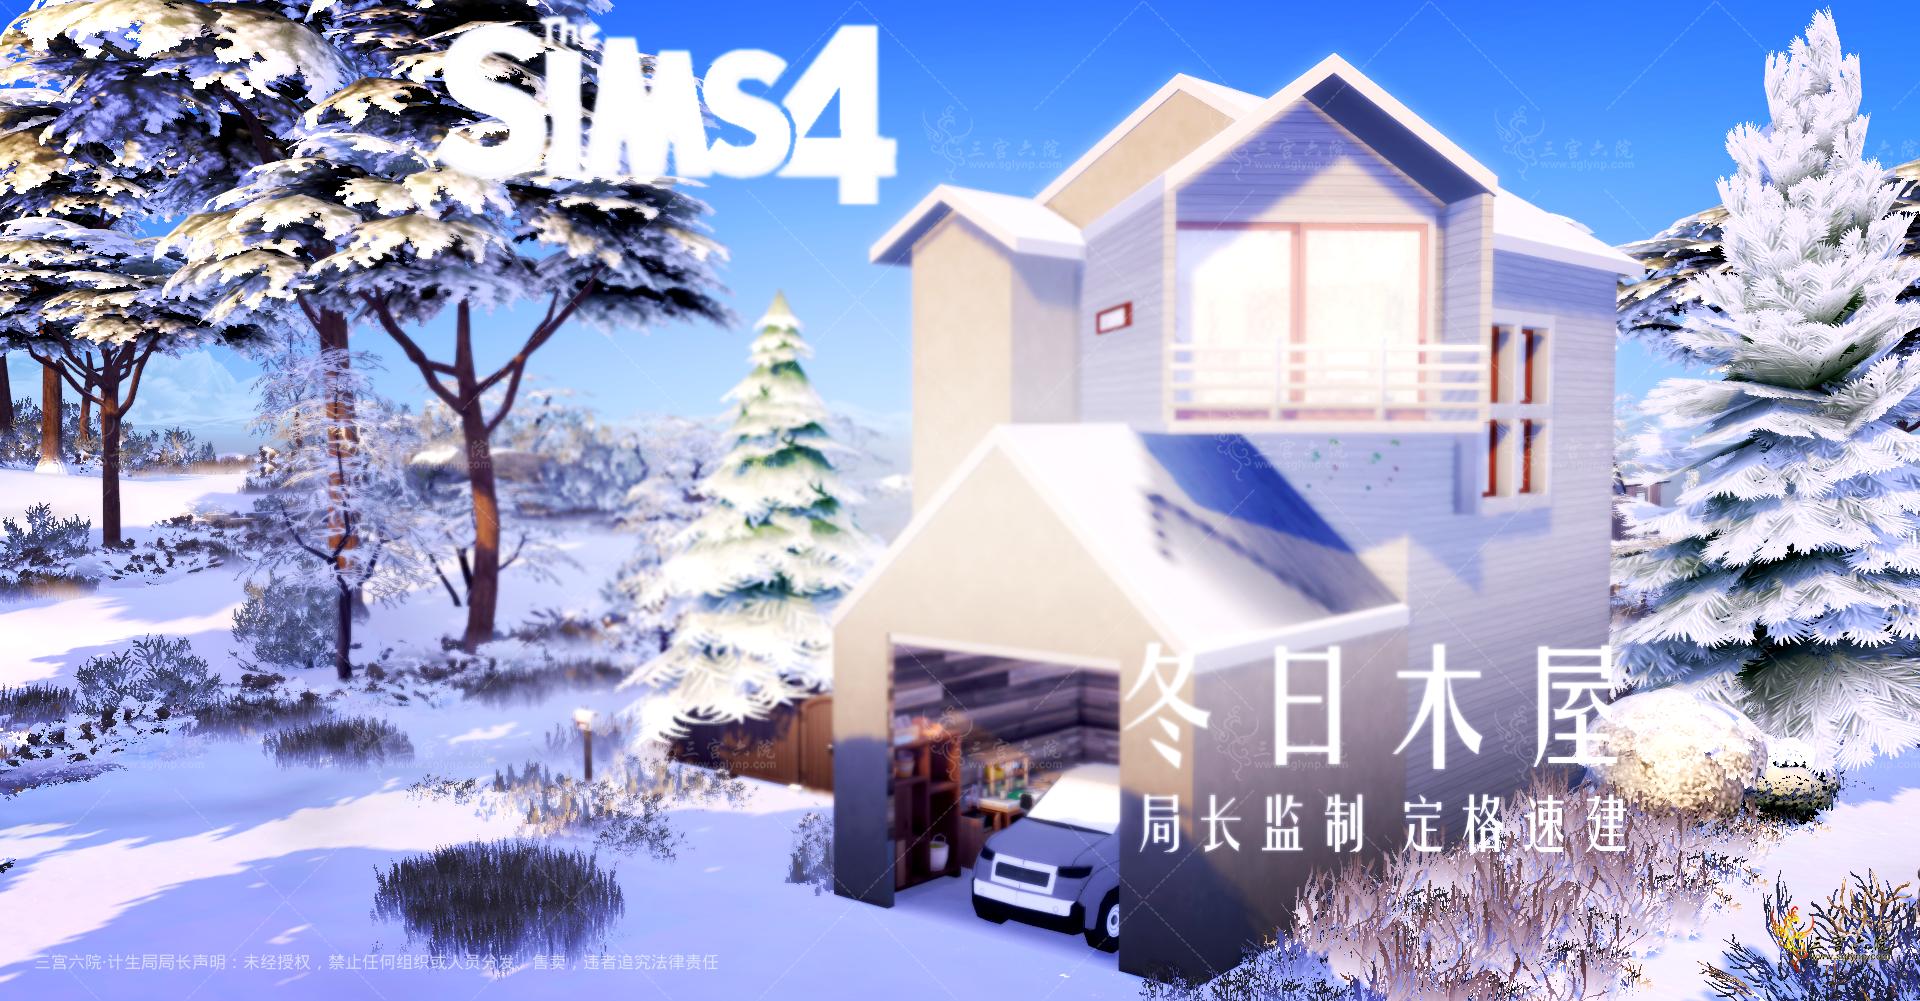 Sims 4 Screenshot 2022.01.01 - 13.06.24.80.png